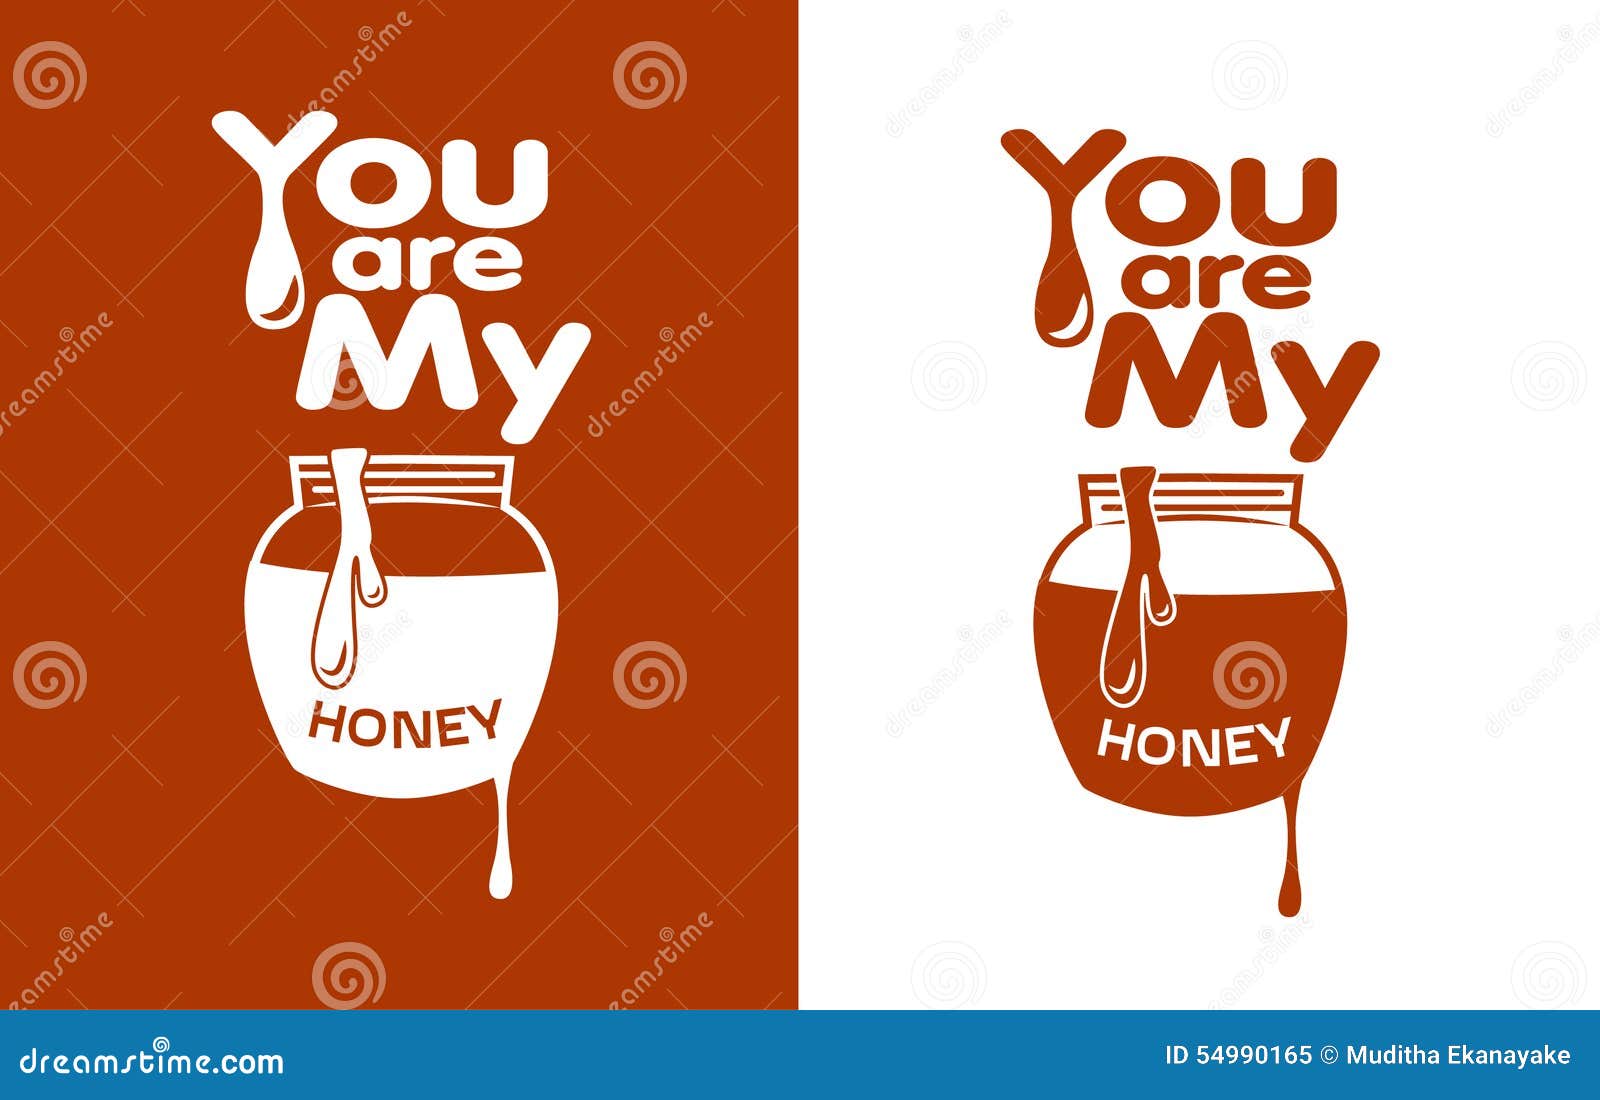 For my Honey. Be my Honey перевод. Honey is перевод